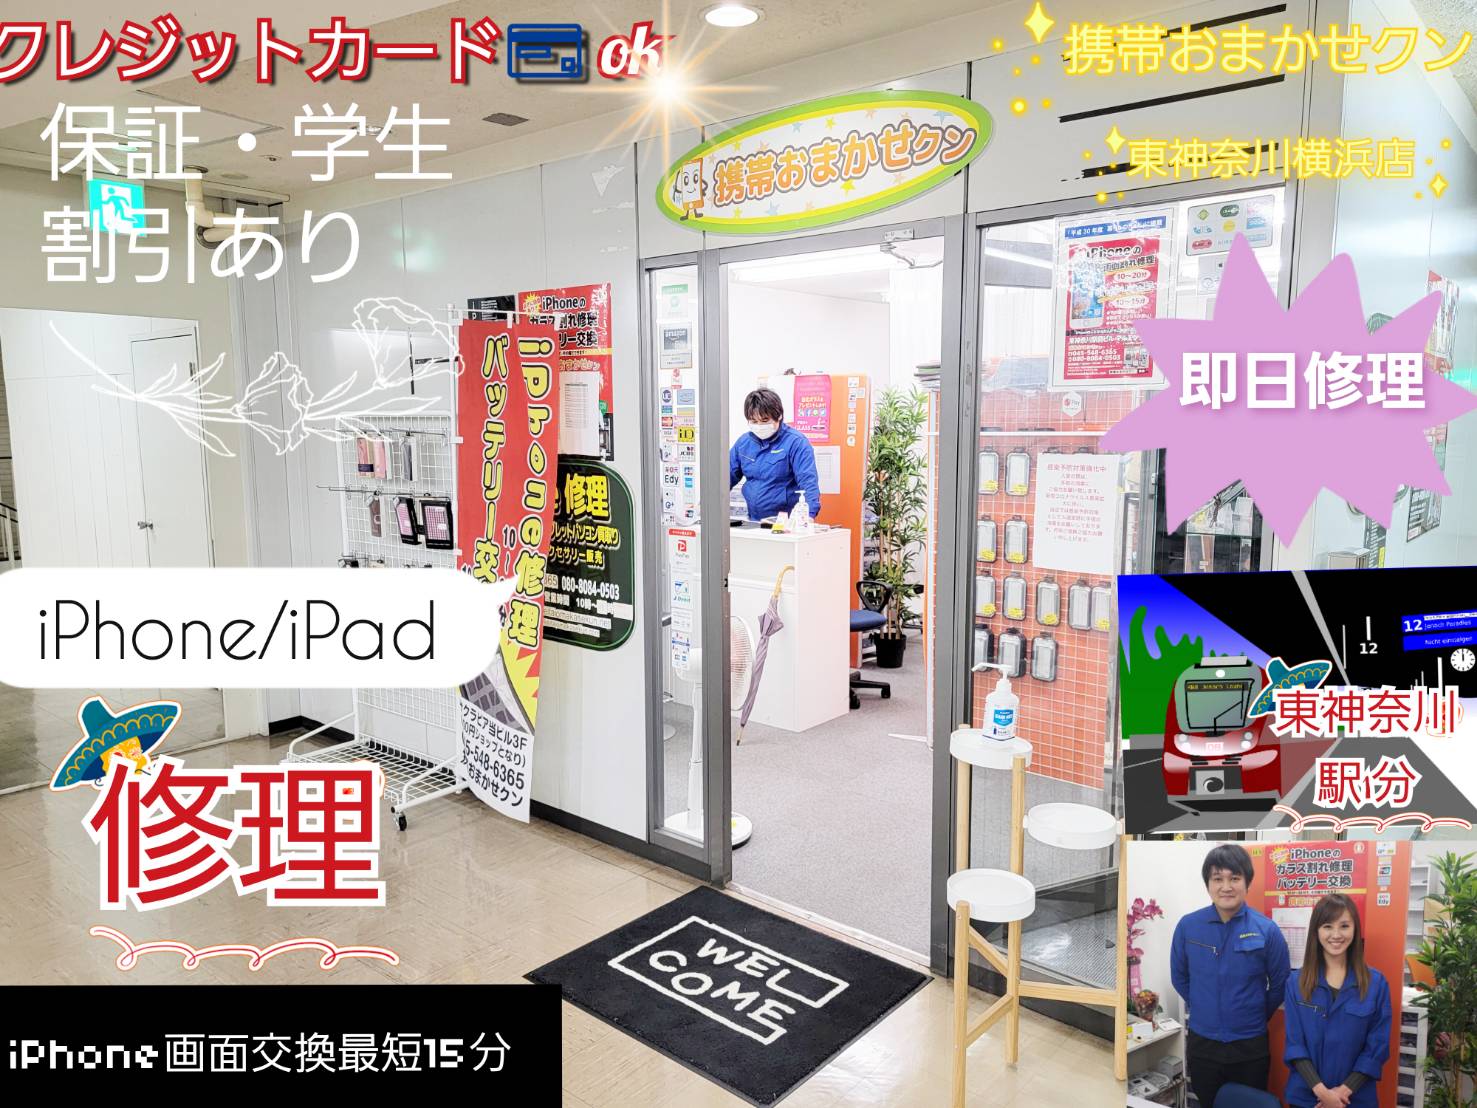 iPhone修理バッテリー交換横浜携帯おまかせクン店舗写真